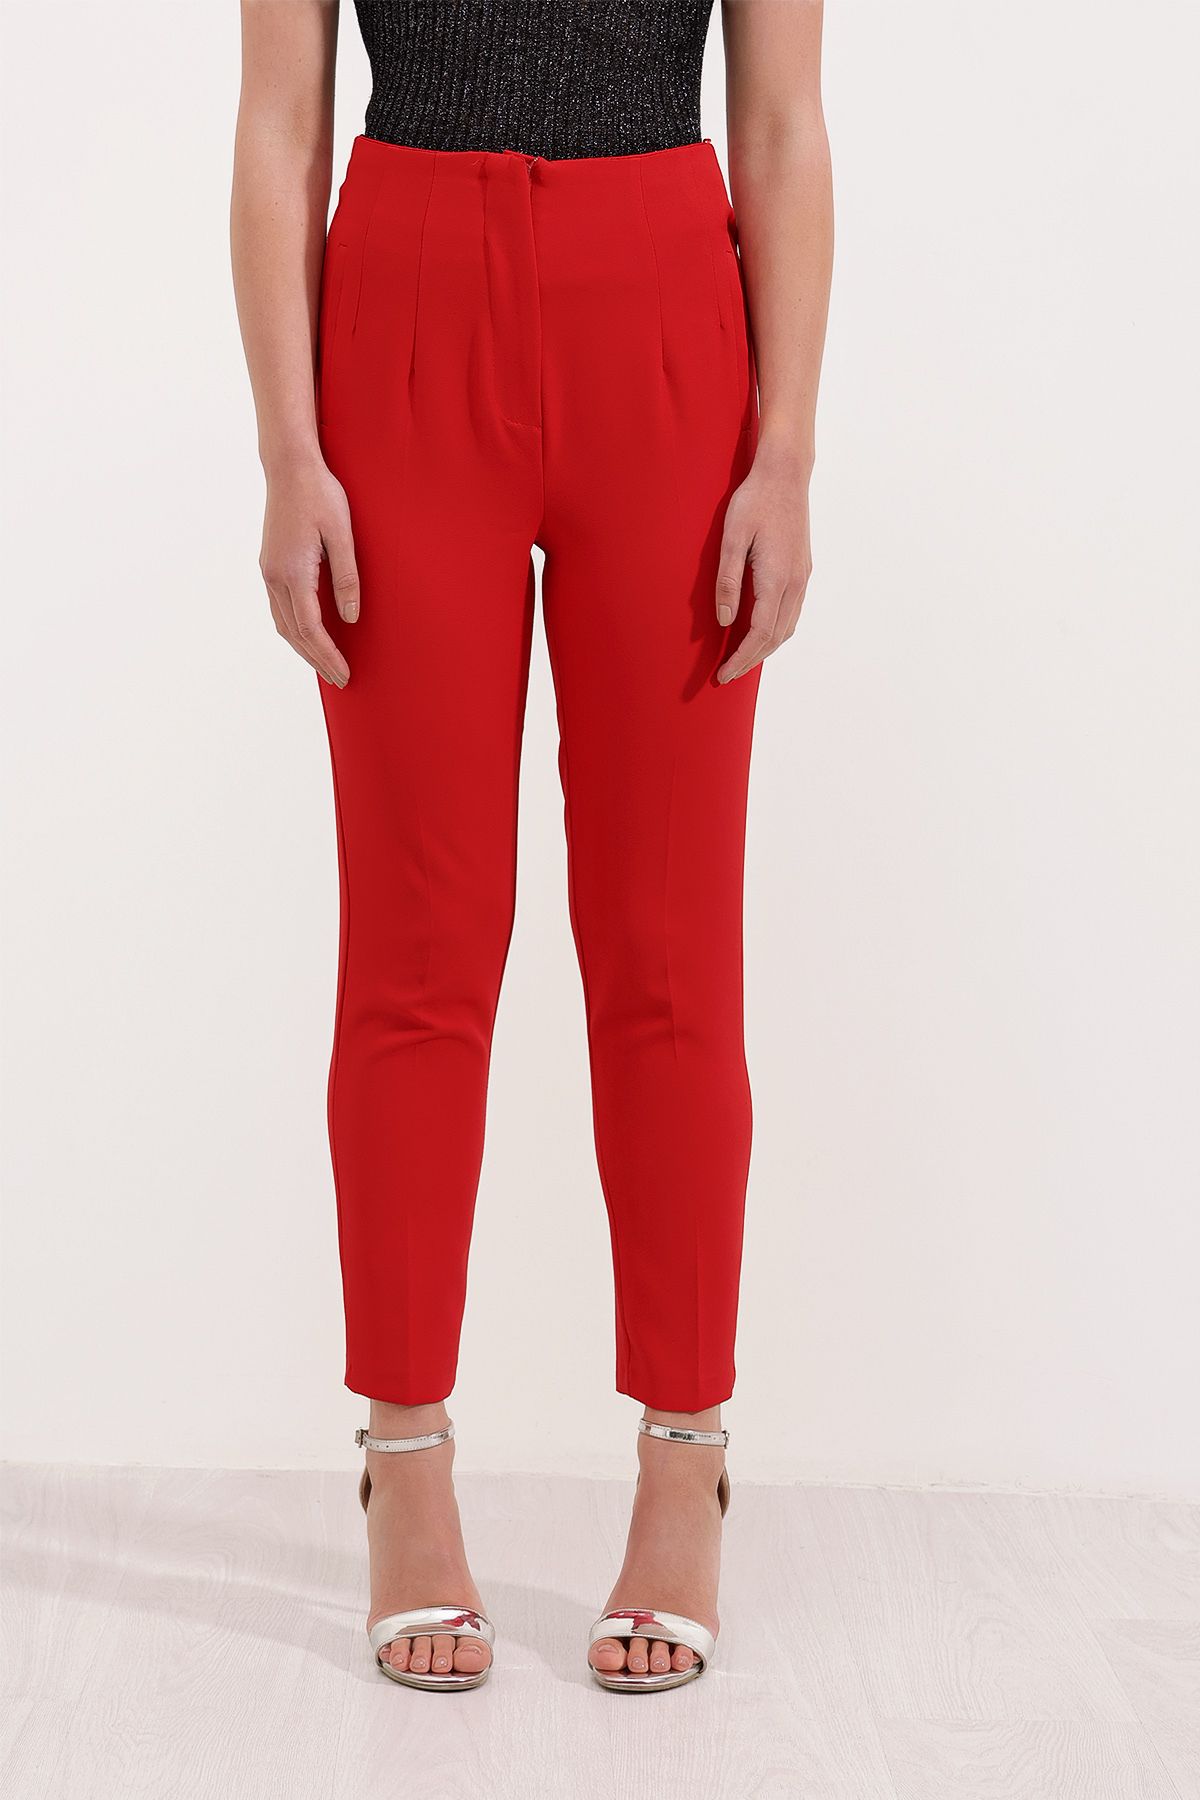 Bigdart Kadın Kırmızı Yüksek Bel Kumaş Pantolon 6650